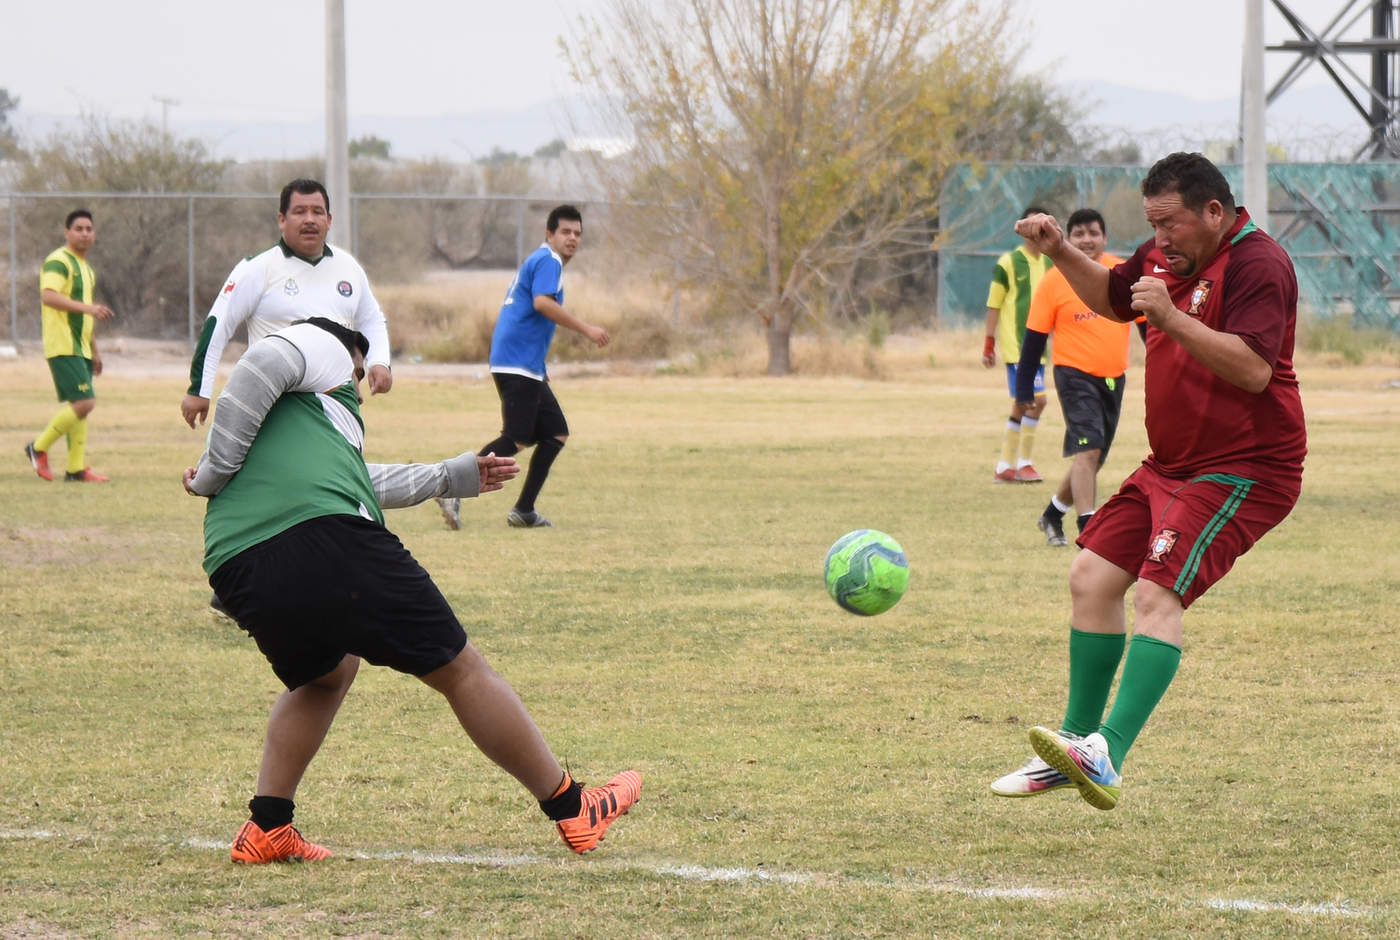 Varios de los equipos interesados, ya comenzaron a disputar partidos amistosos en diferentes escenarios de la Comarca Lagunera. (Archivo)